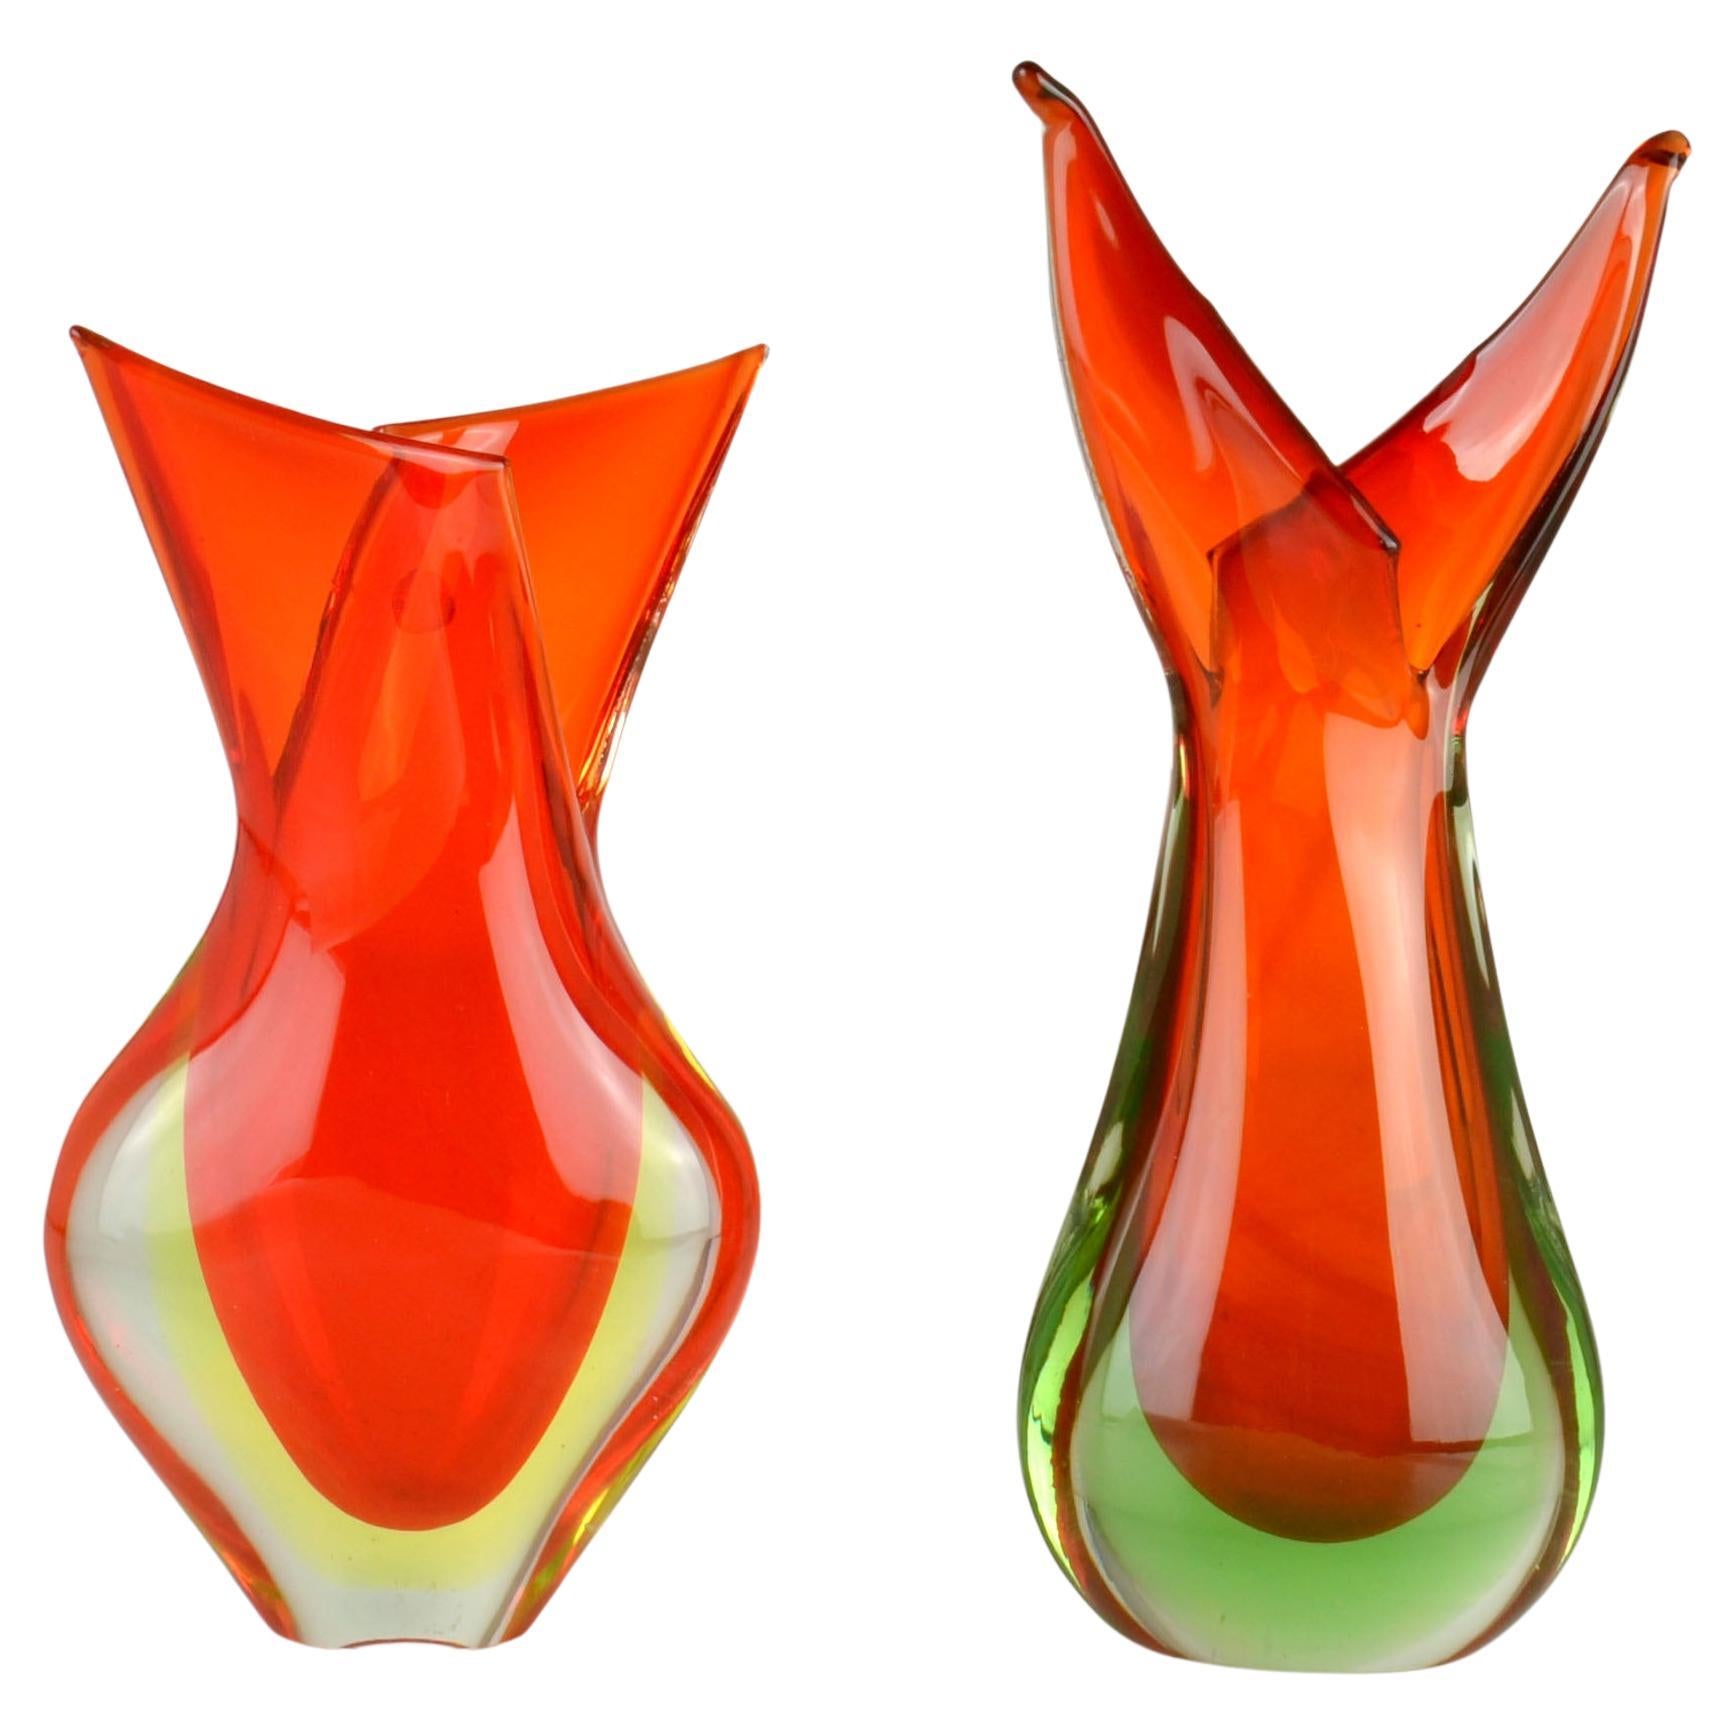 Vases en verre de Flavio Poli pour Seguso dans les années 1950, en forme de flamme orange, soufflés à la main, connus sous le nom de Sommerso vénitien, fabriqués à Murano, Venise, Italie. 
Les vases sont une combinaison d'orange débordant sur du